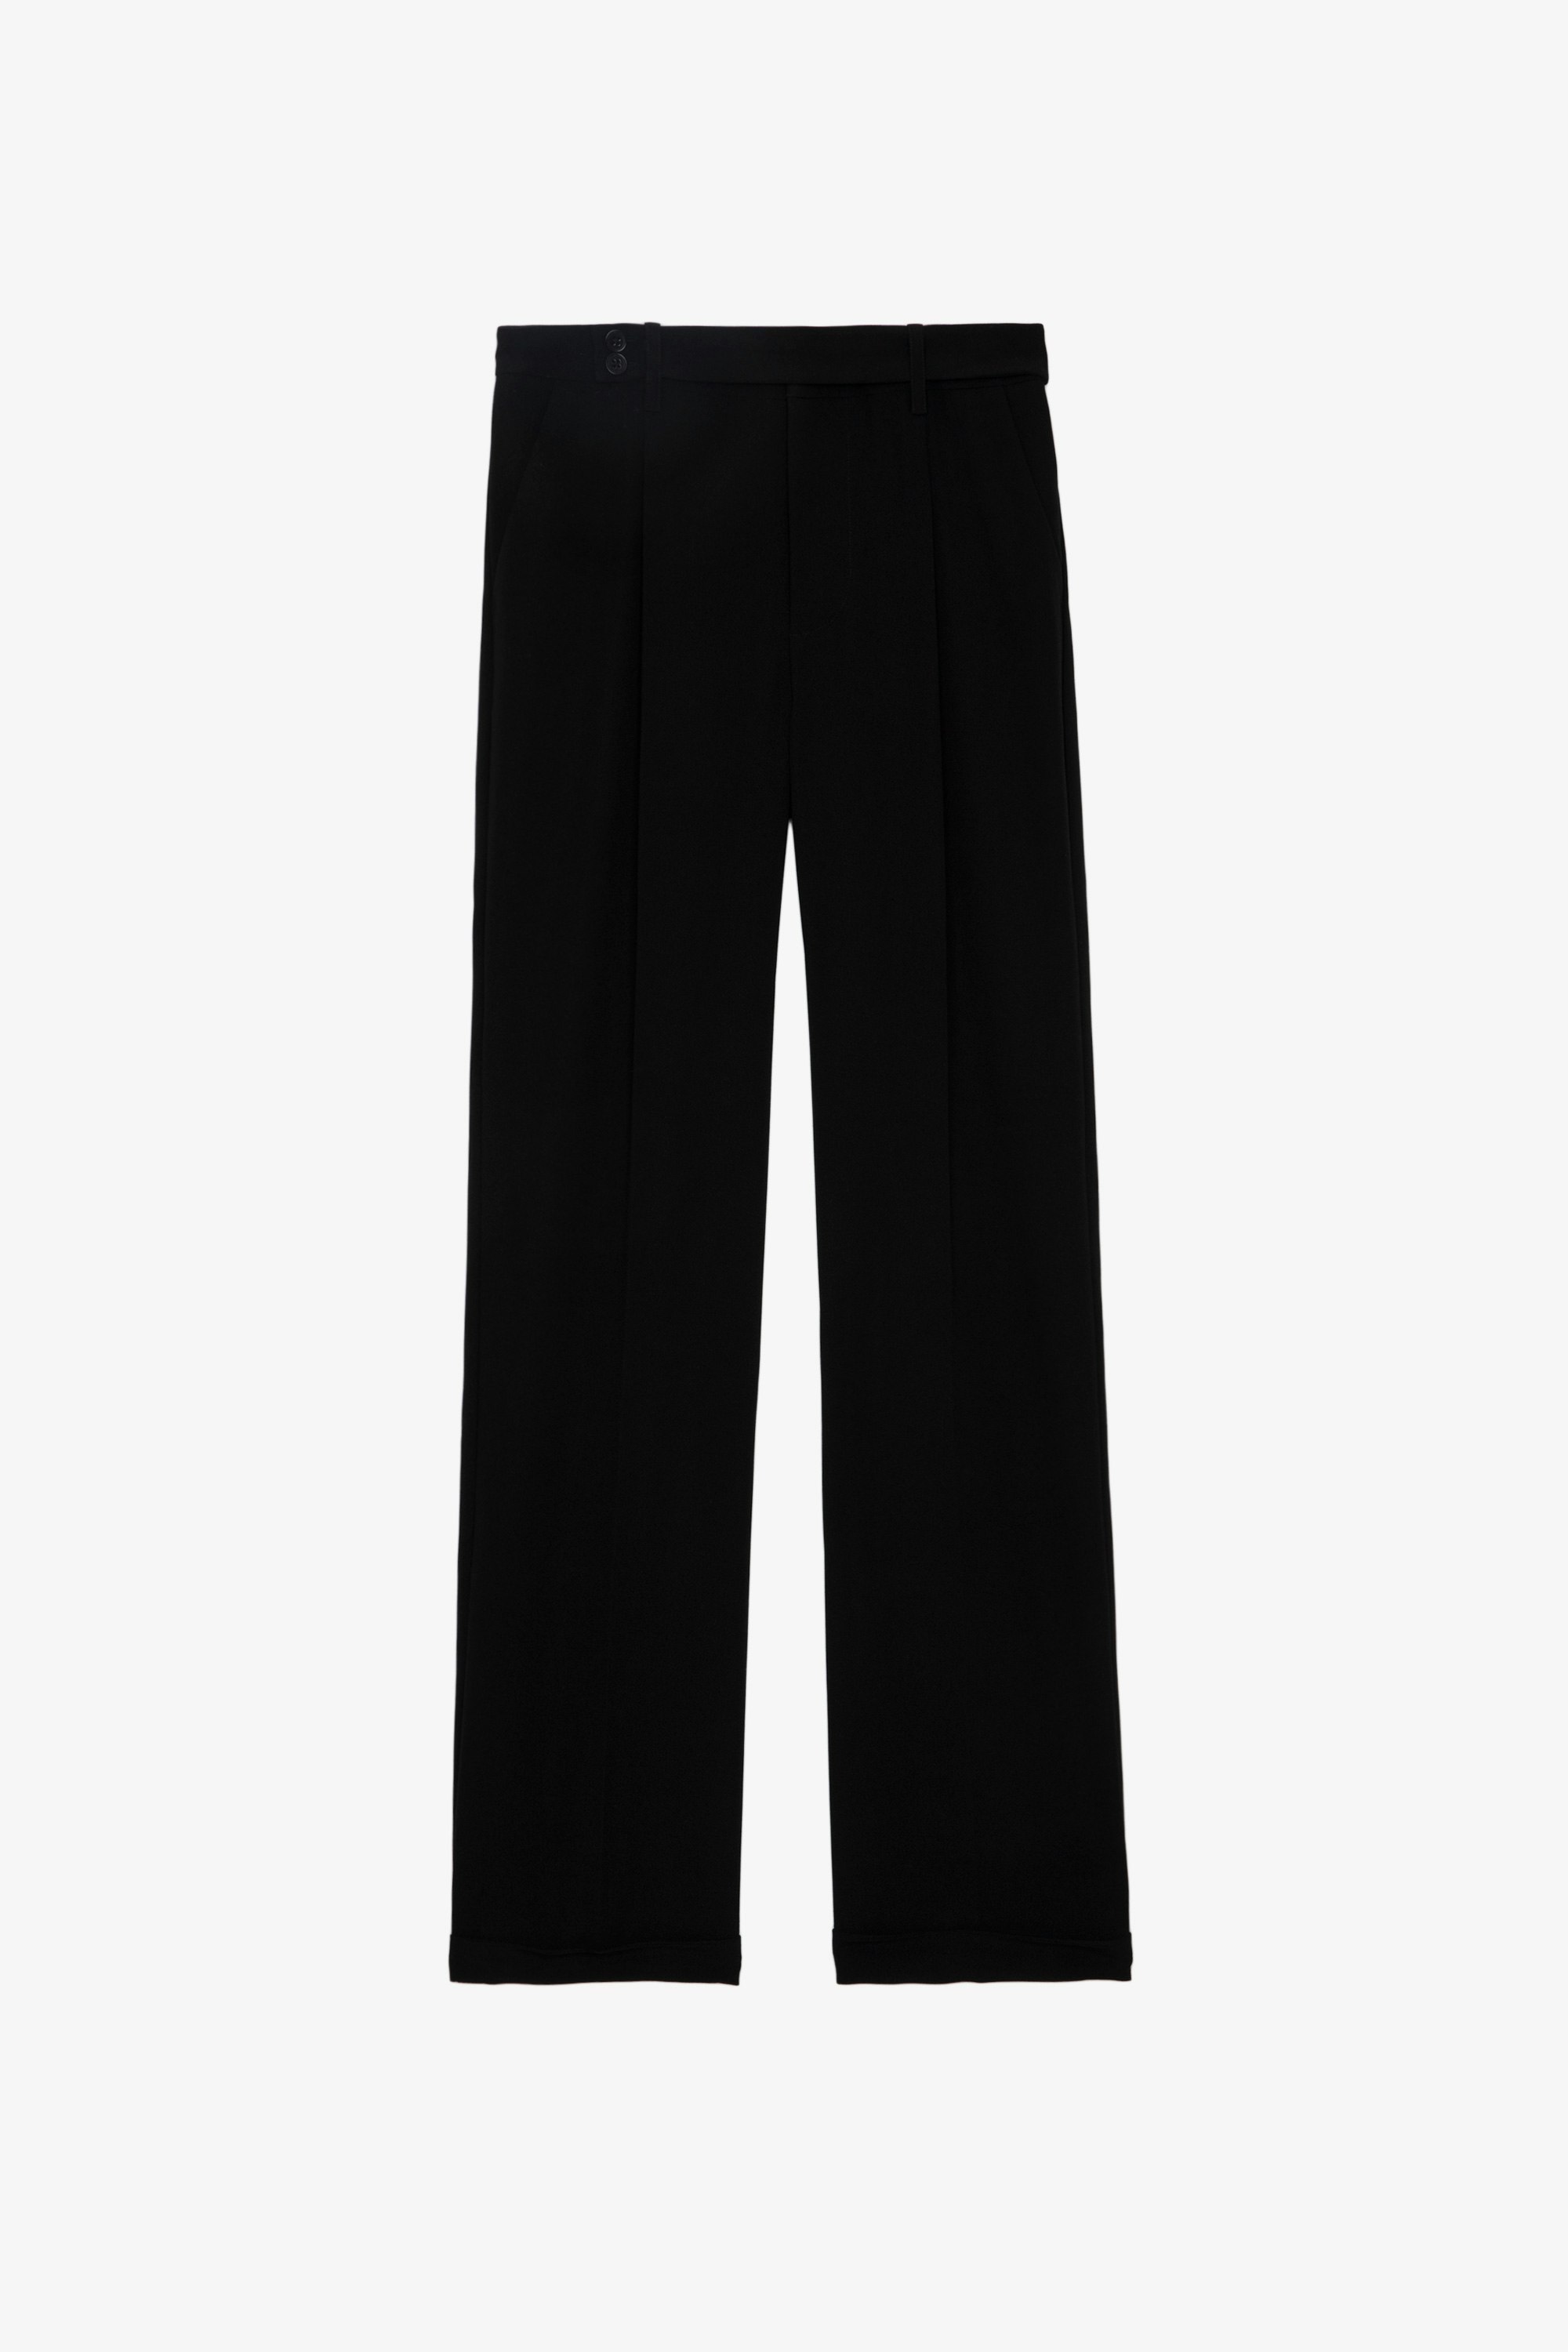 Pantalón Pura - Pantalón negro de traje de crepé con bolsillos y dobladillos.